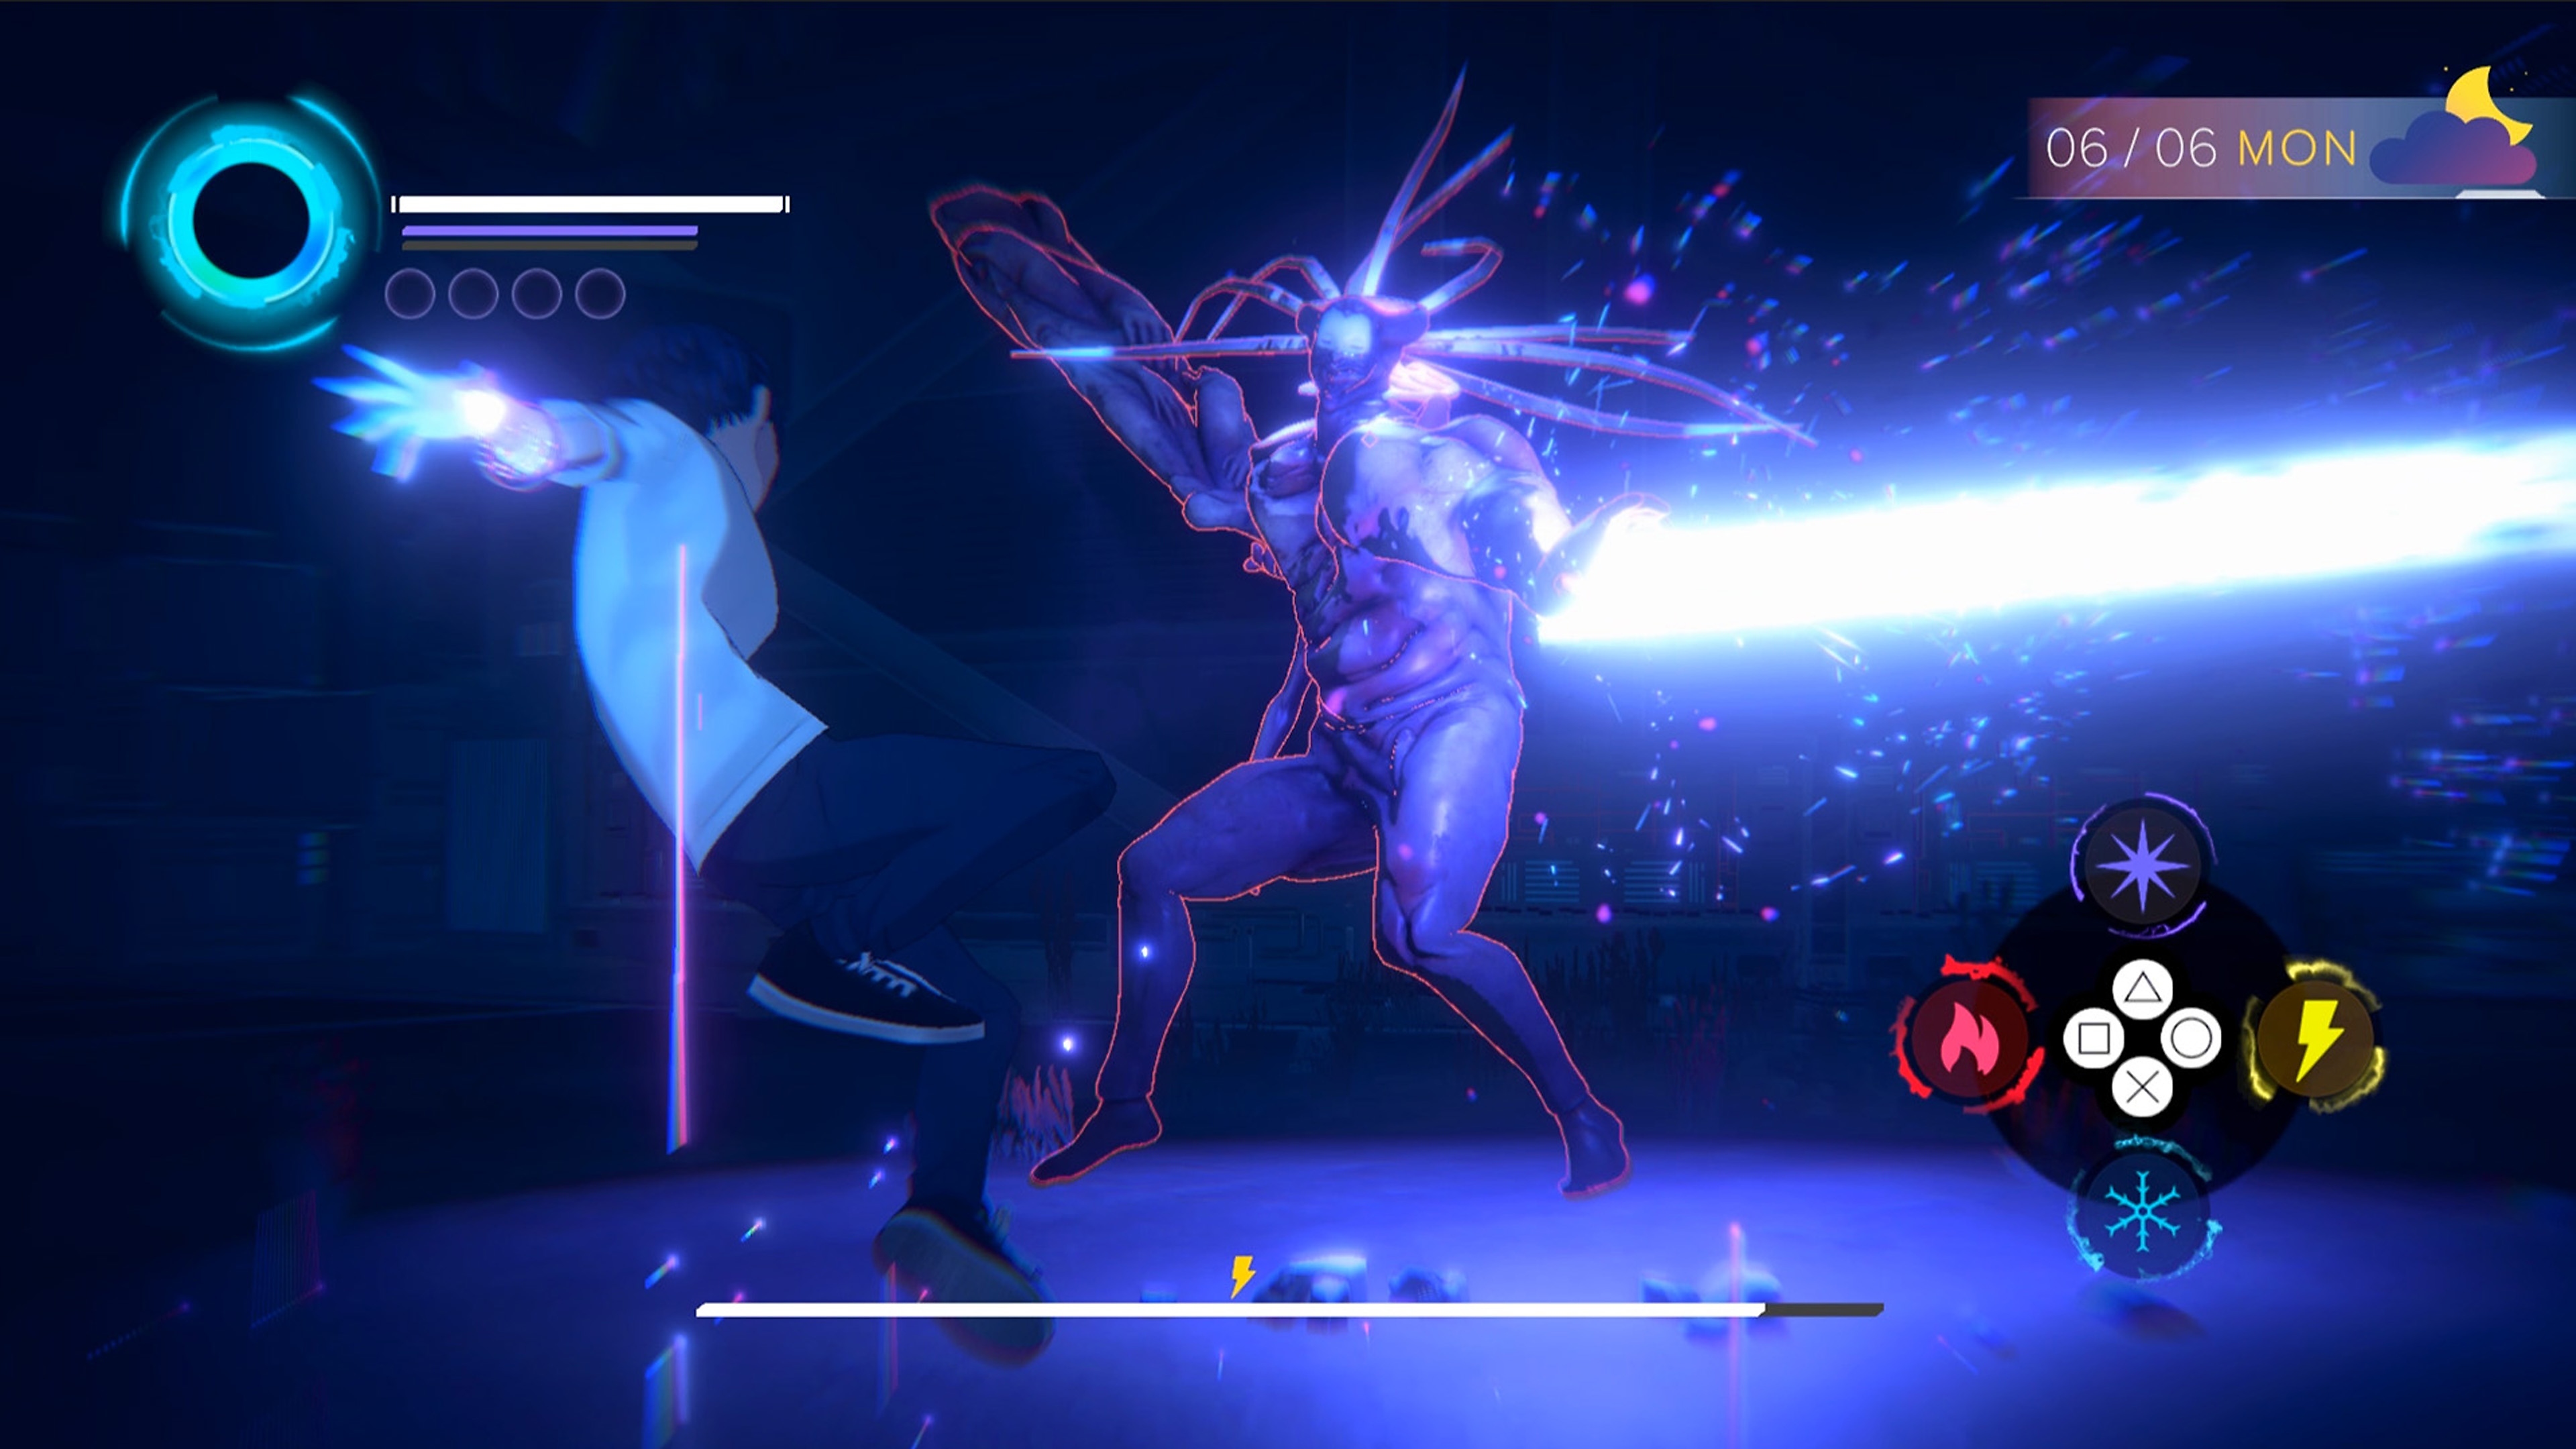 Captura de pantalla de Eternights mostrando a un personaje adolescente luchando contra una gran criatura demoníaca.